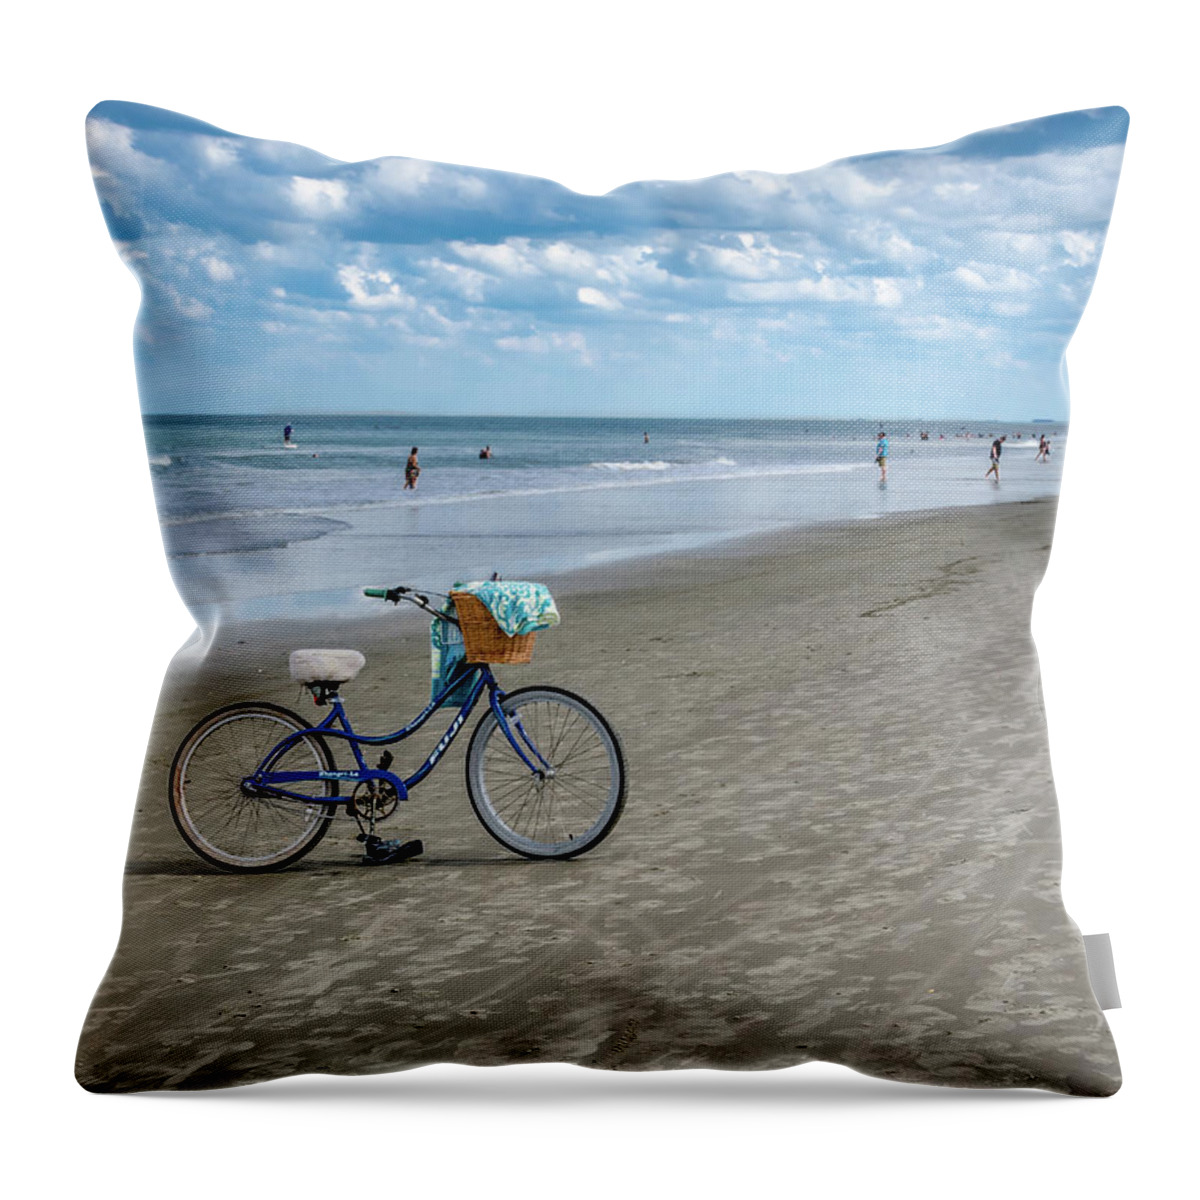 Daytona Beach Throw Pillow featuring the photograph Winter in Florida by Jaime Mercado